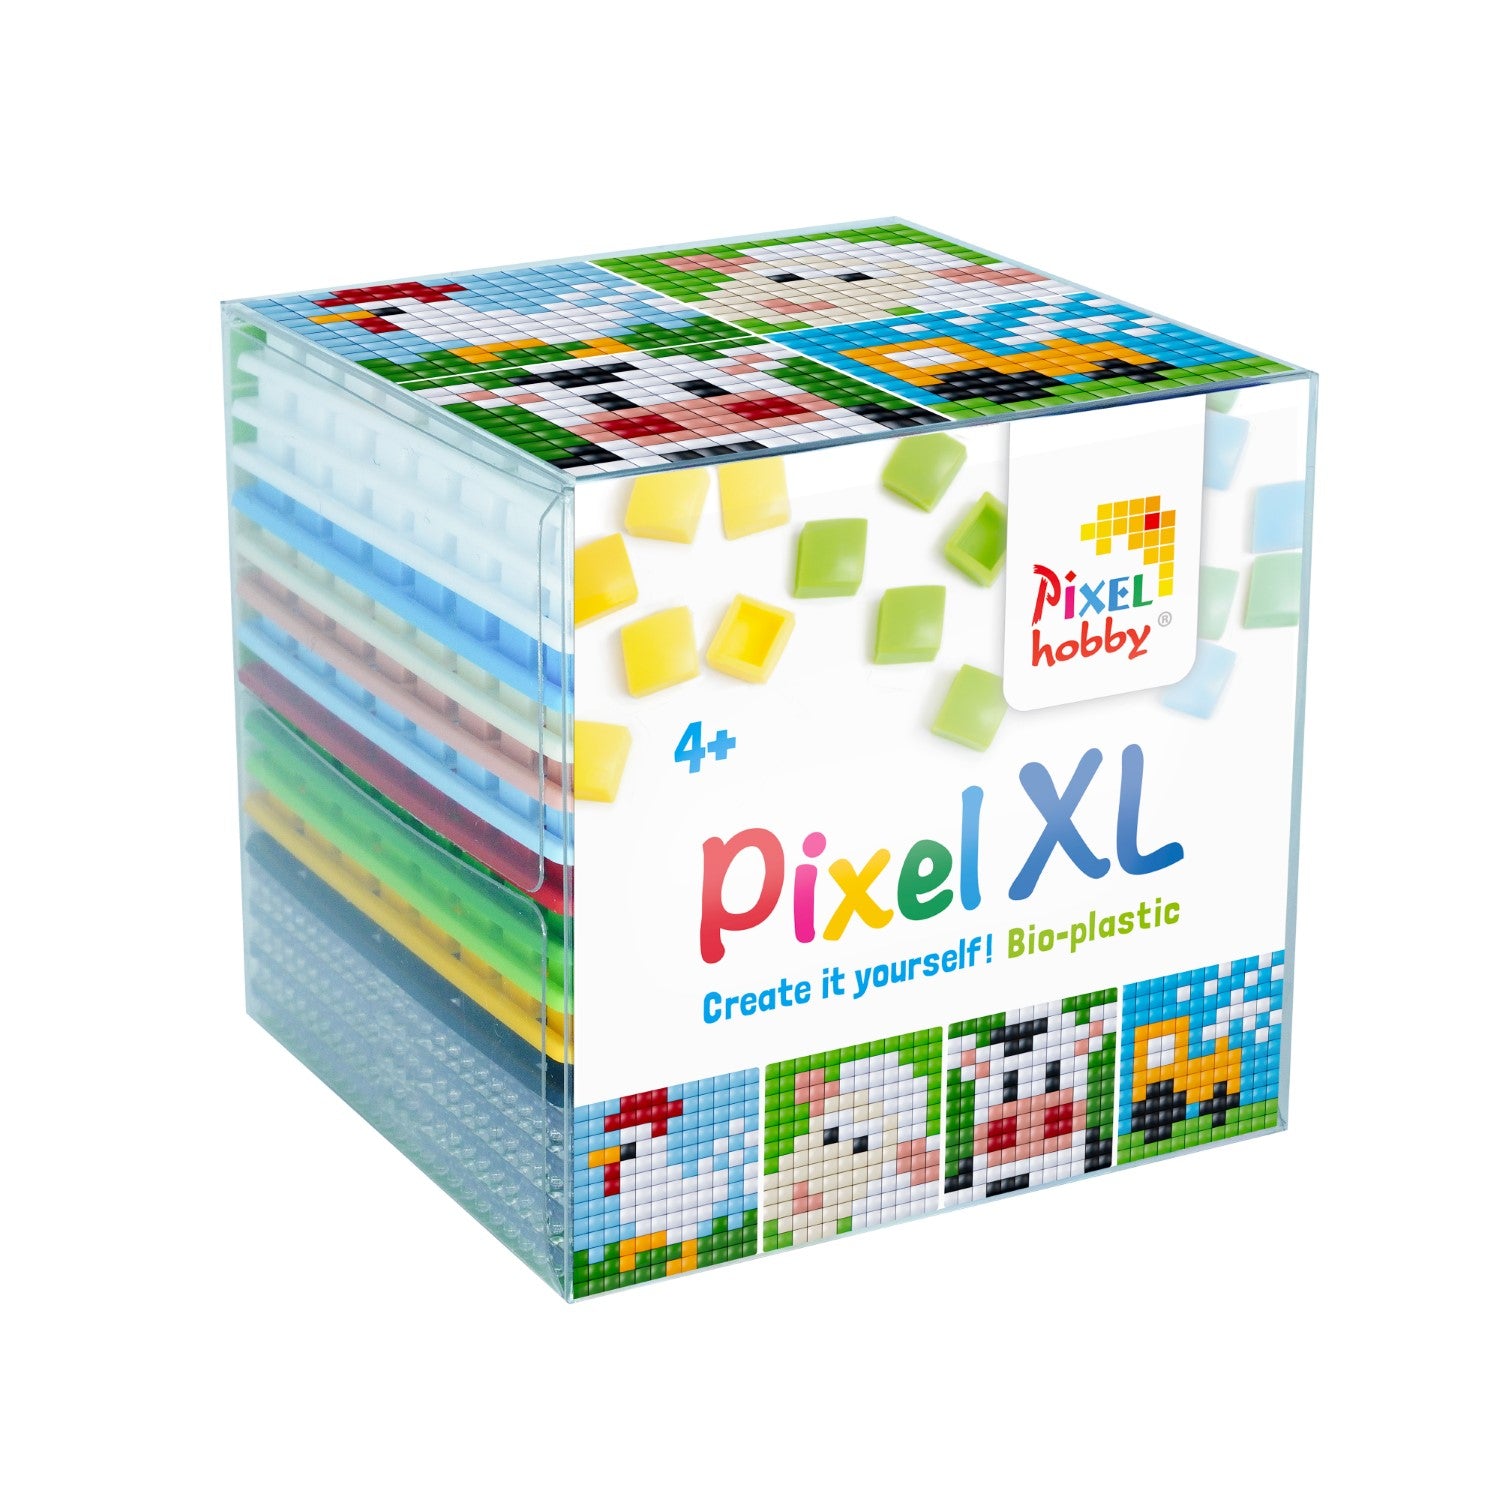 Pixelhobby XL Cube - Farm